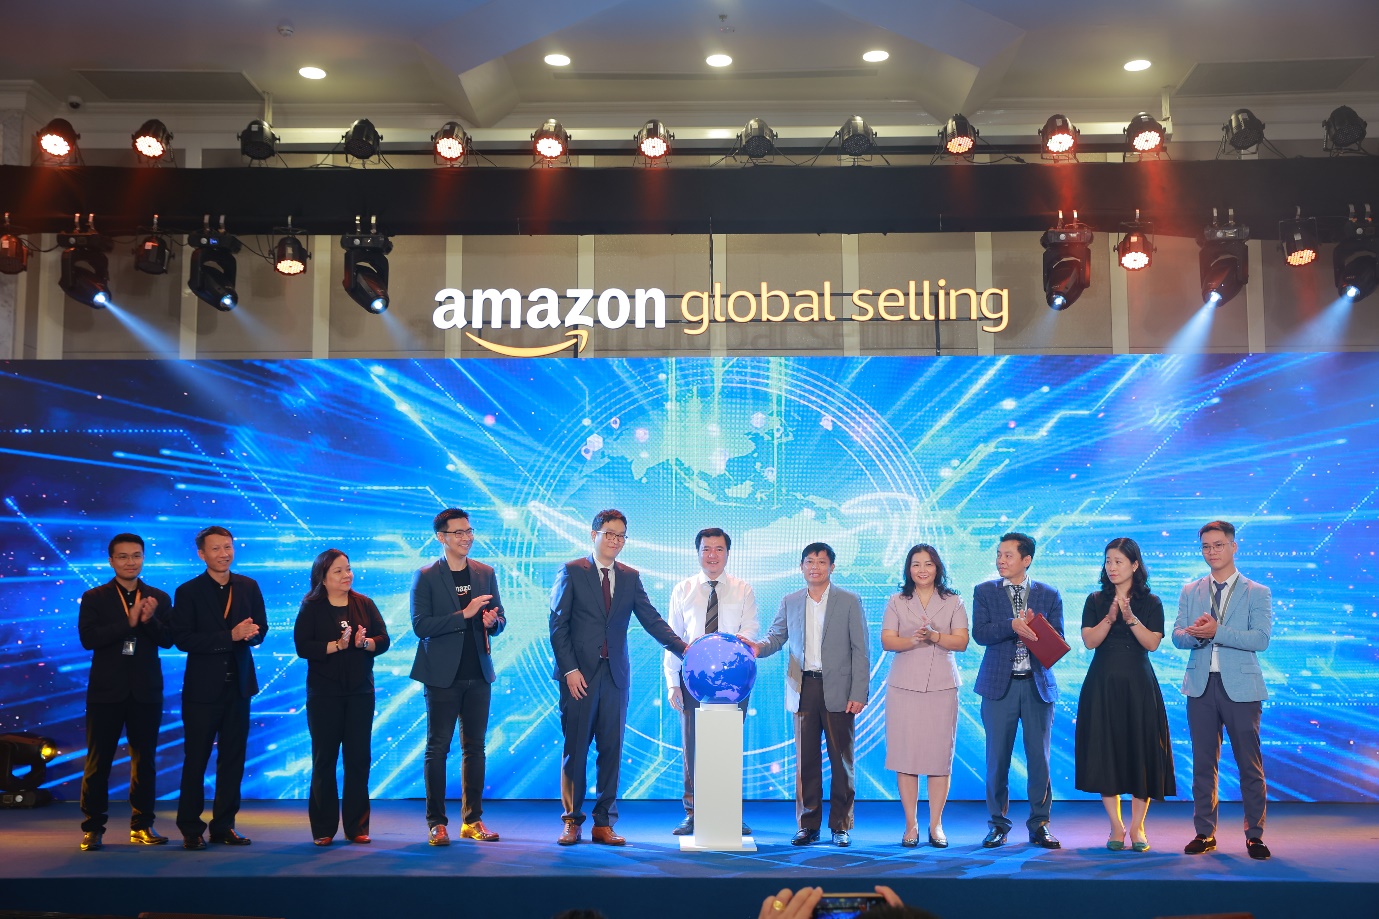 Amazon Global Selling và Cục Thương mại điện tử và Kinh tế số - Bộ Công Thương ký kết Biên bản ghi nhớ & công bố sáng kiến: “Thương mại điện tử Xuyên biên giới: Kỷ nguyên bứt phá”